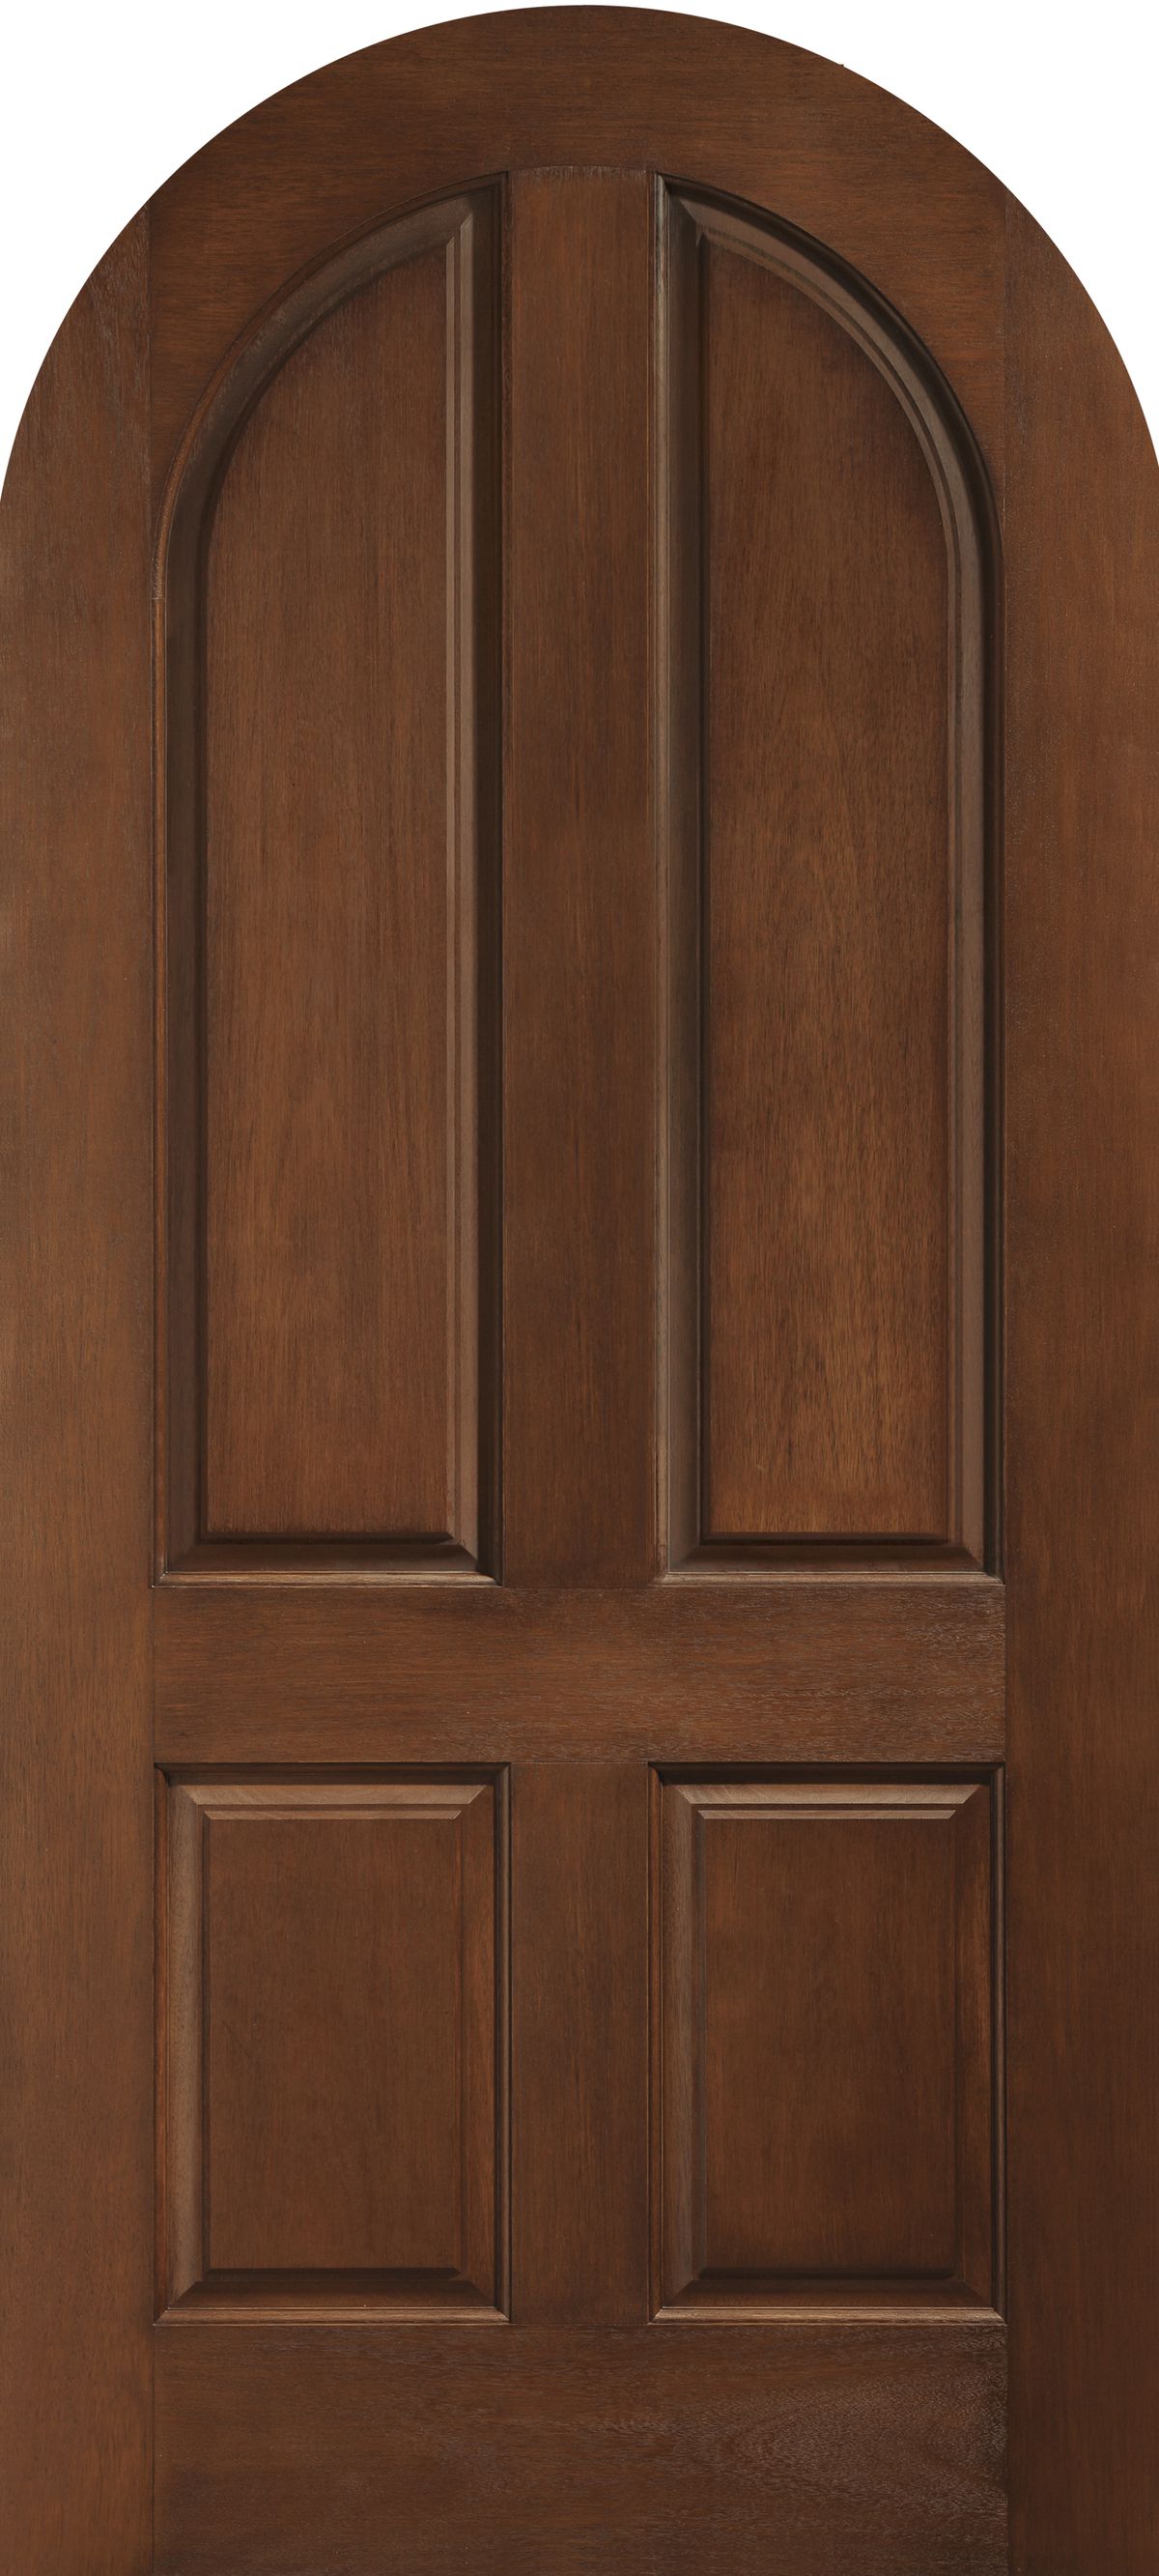 Tudor Style Fiberglass Door